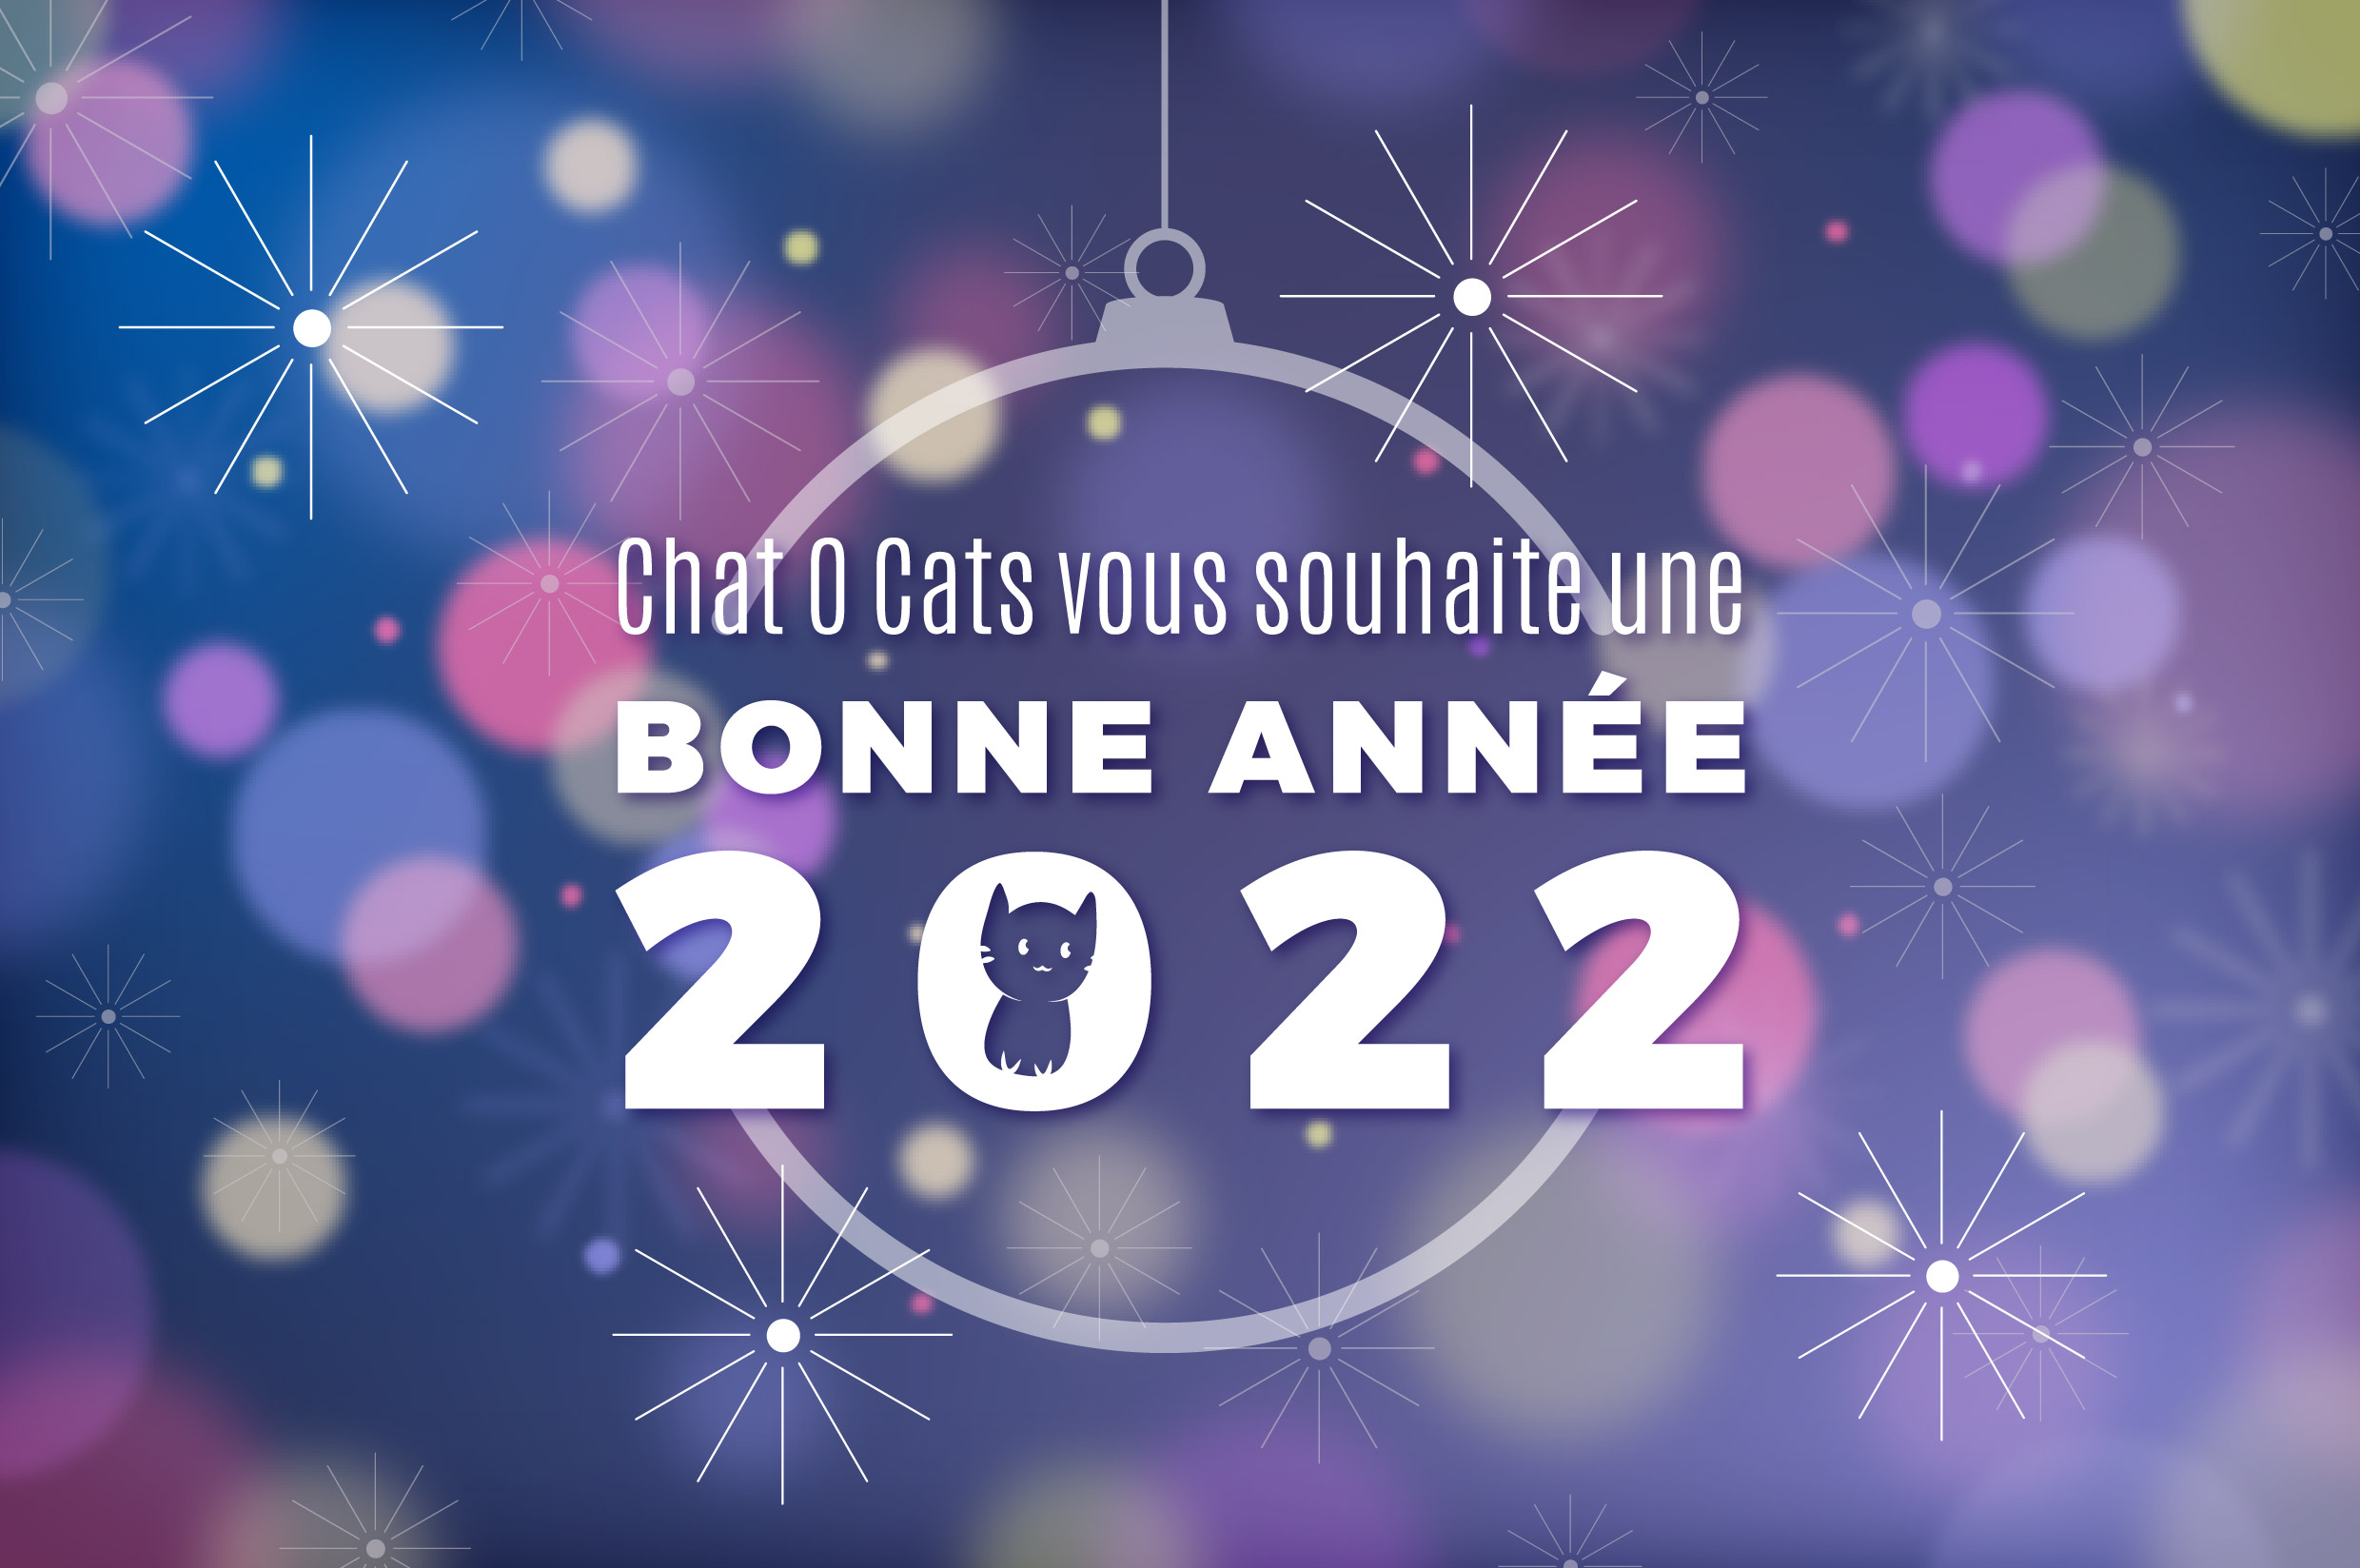 Chat O Cats vous souhaite une bonne année 2022 !